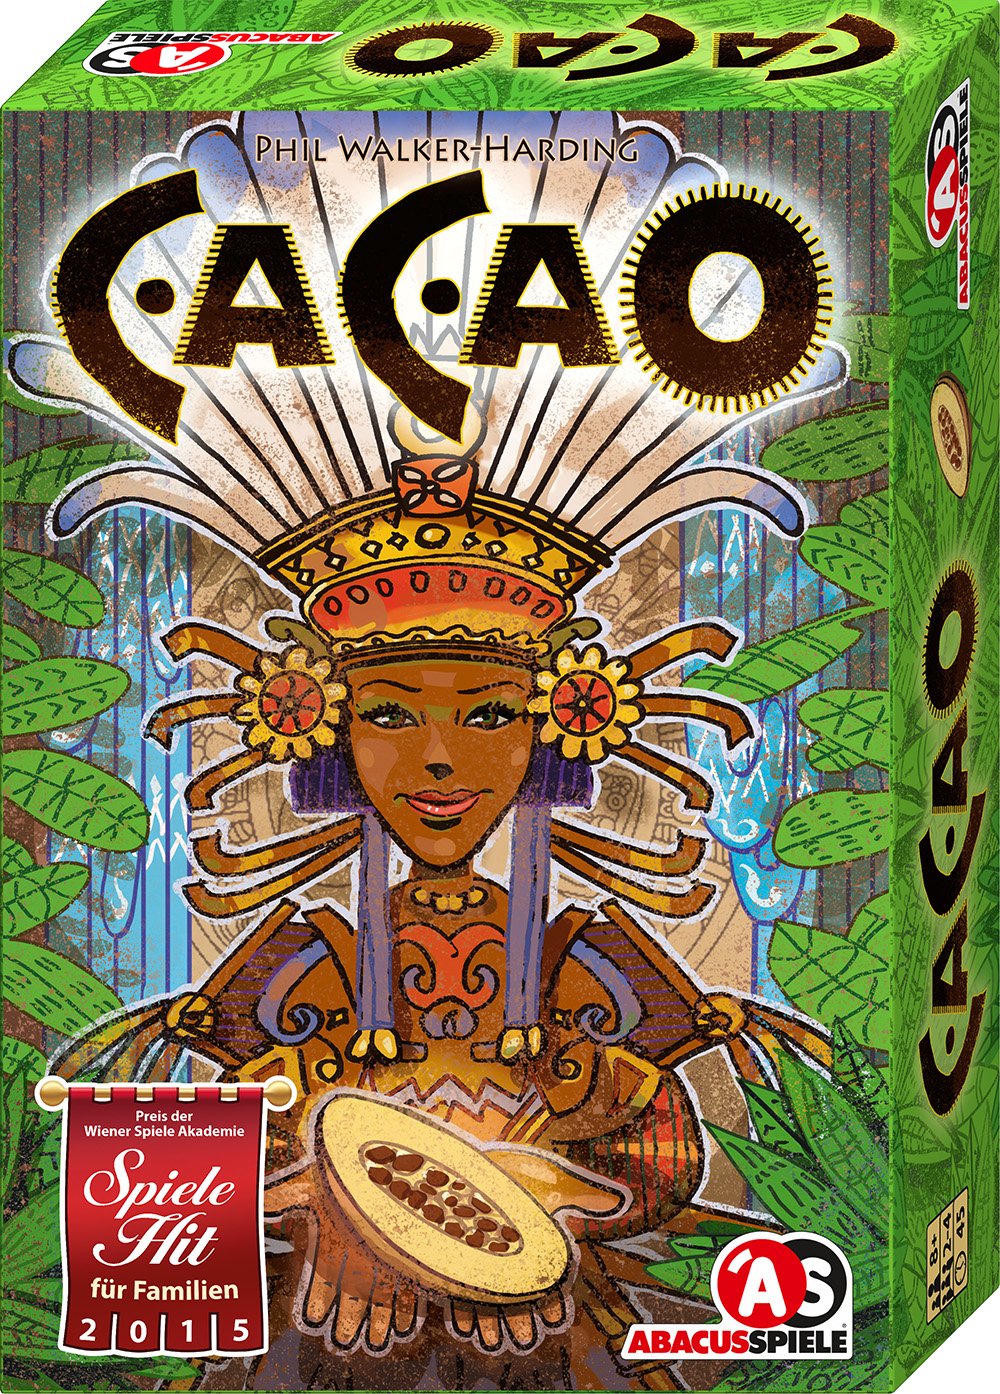 ABACUSSPIELE 04151 - Cacao, Legespiel, Brettspiel, Familienspiel: Auf der Empfehlungsliste zu Spiel des Jahres 2015